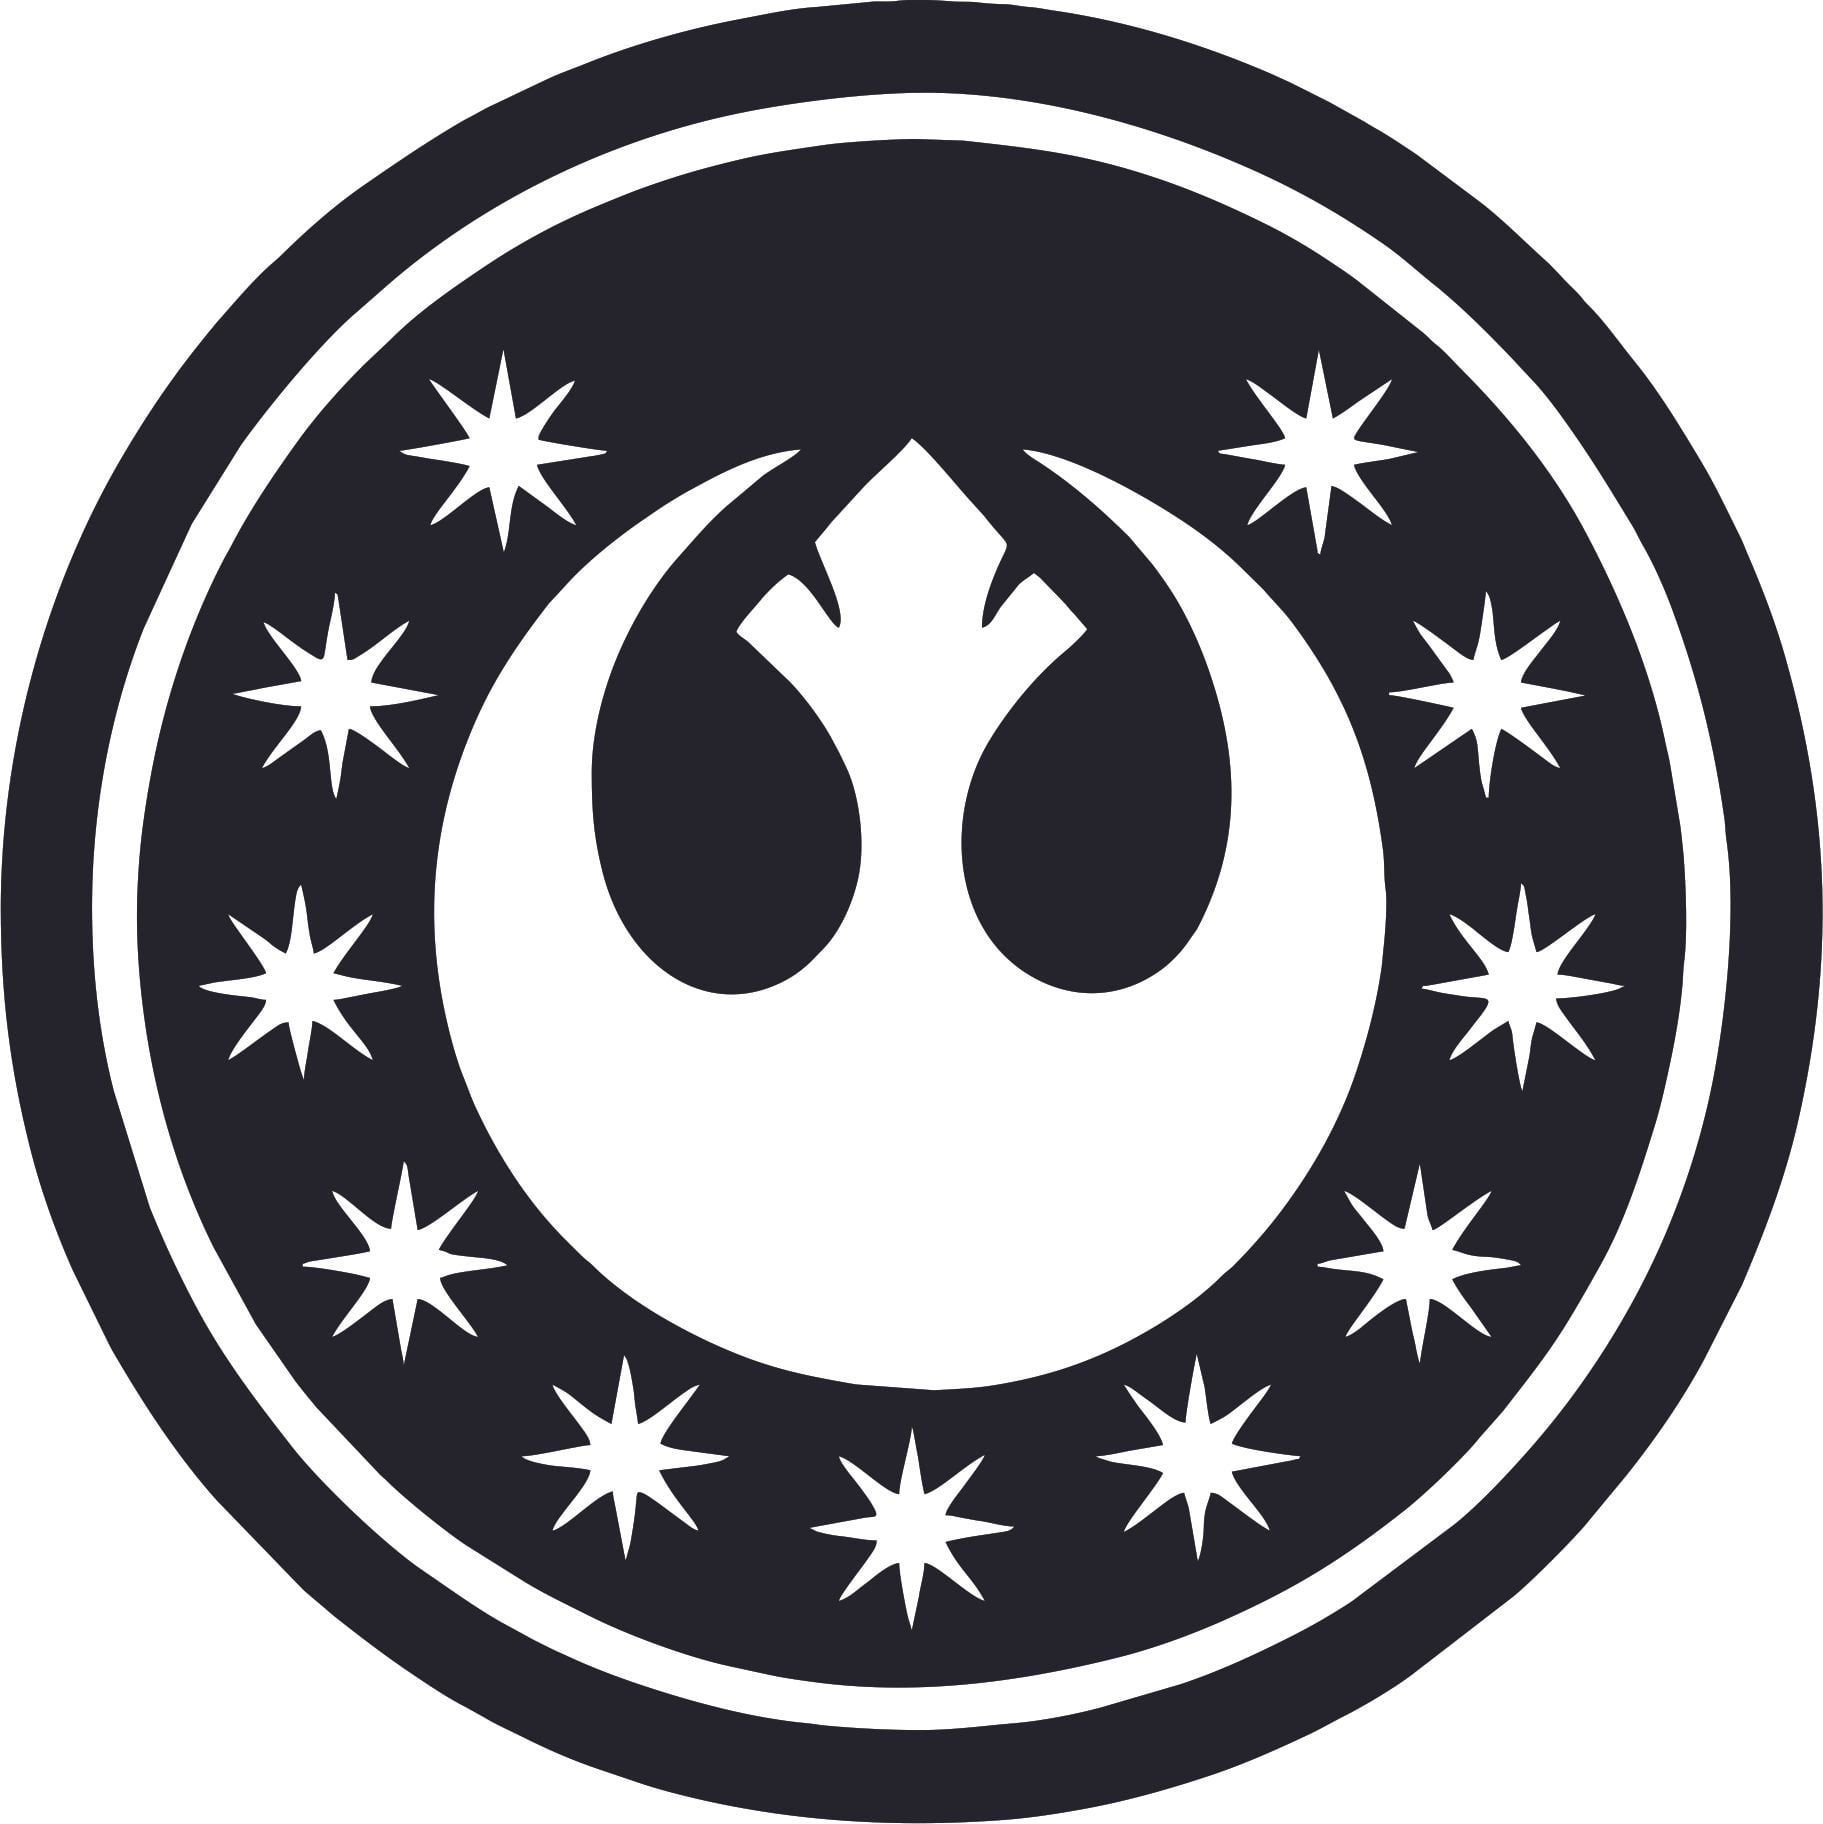 Download New Jedi Order Star Wars Symbol Cartoon Character Wall Art ...